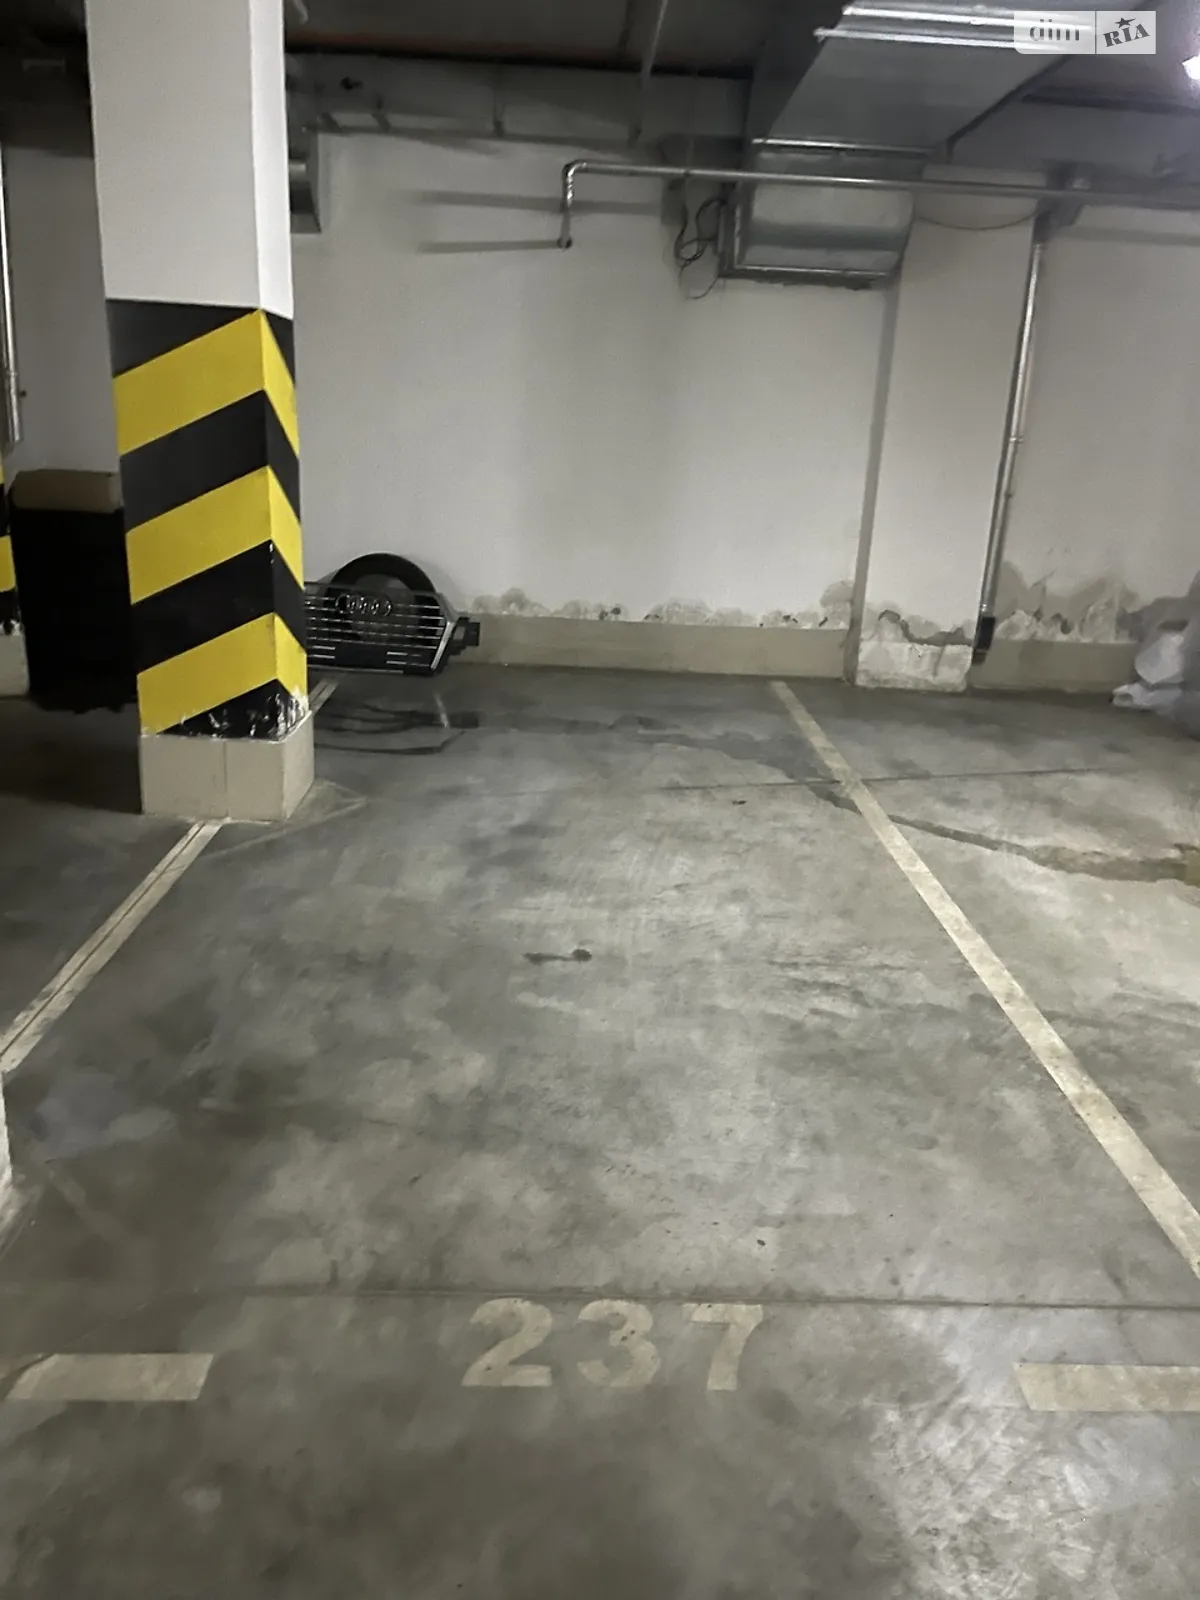 Продается подземный паркинг под легковое авто на 15 кв. м - фото 3